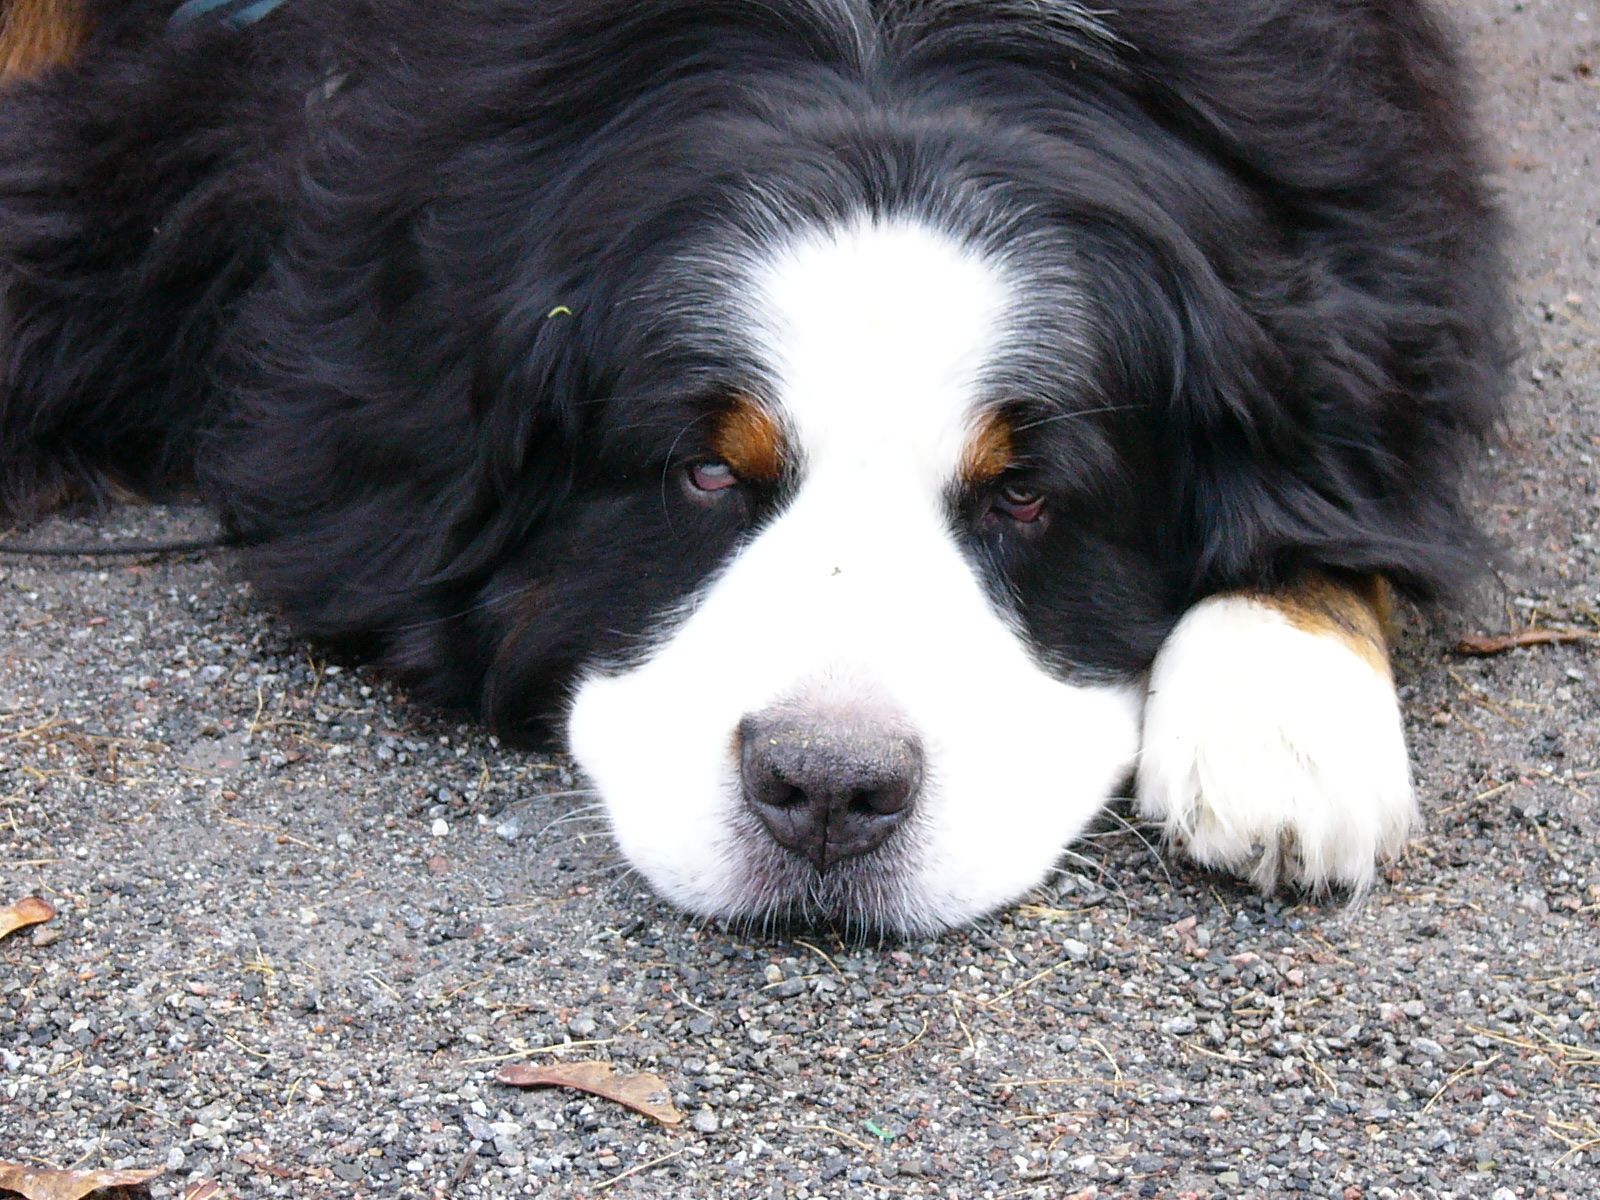 بک گراند جالب سگ بزرگ روی زمین به رنگ سیاه سفید